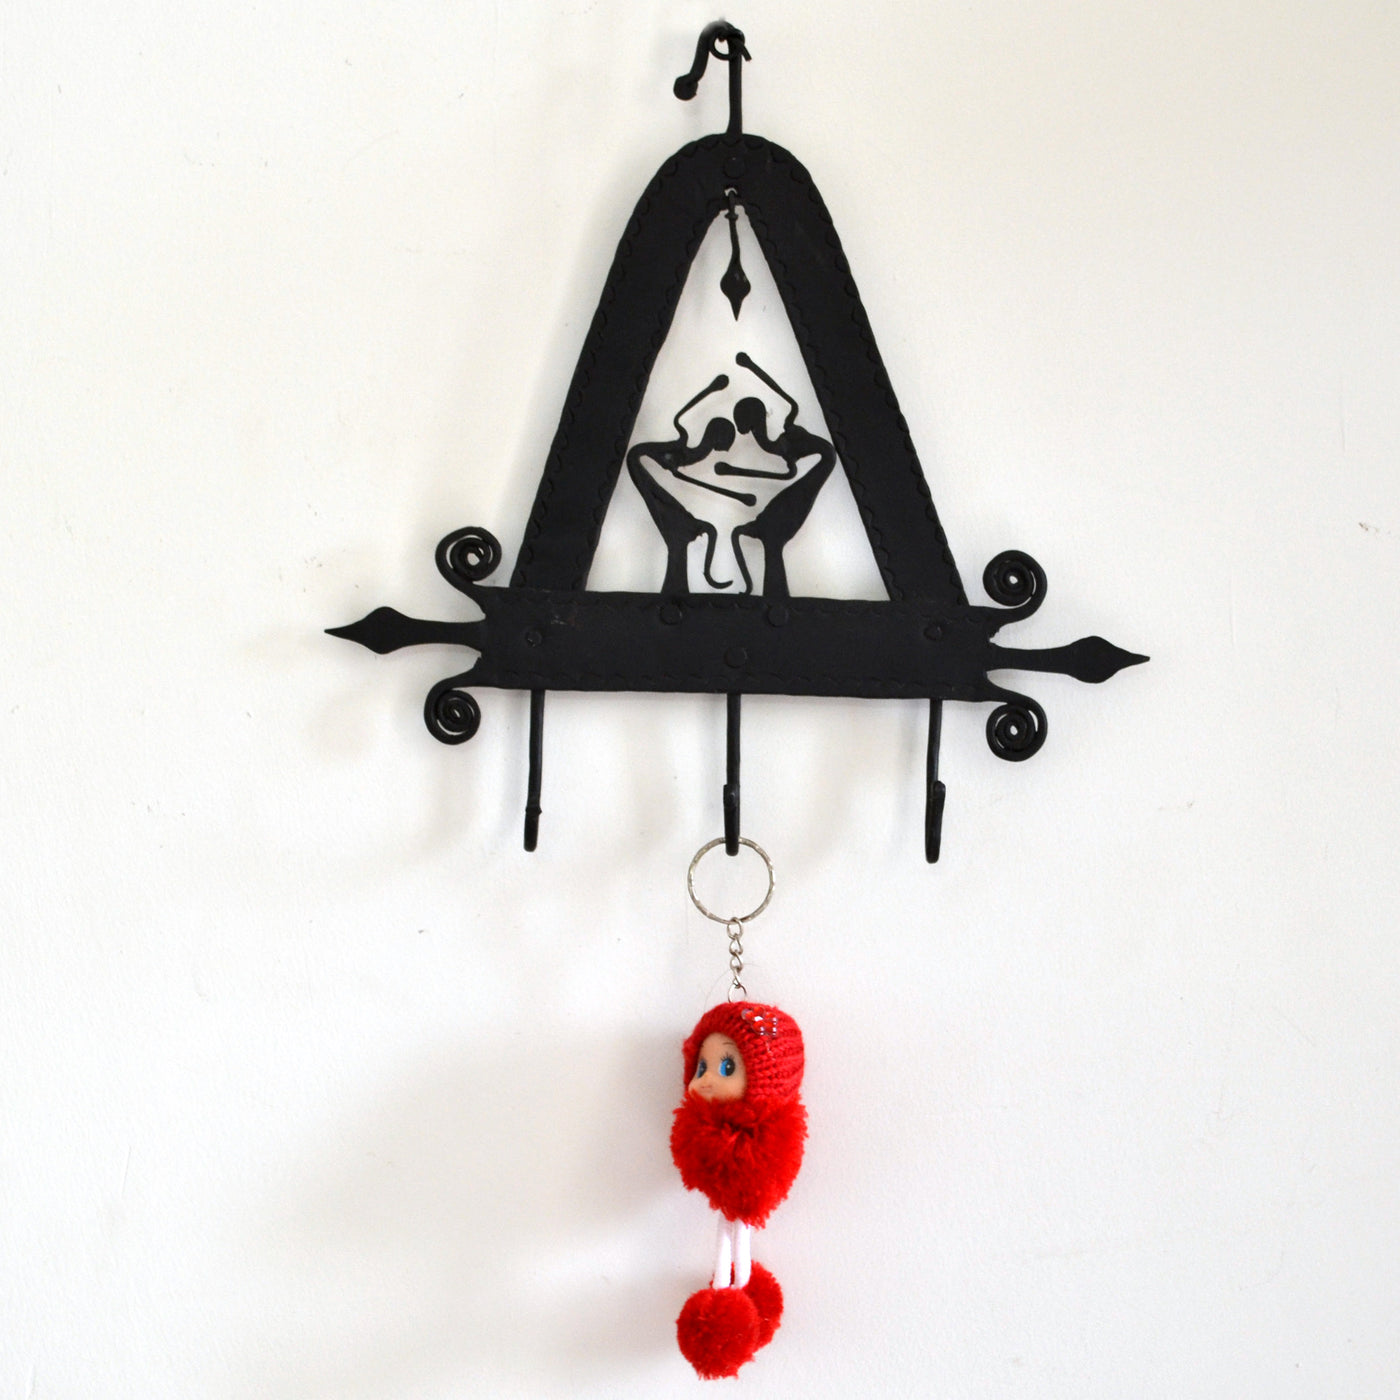 Chinhhari arts Wrought Iron triangle 3 hook keychain holde - Chinhhari Arts store